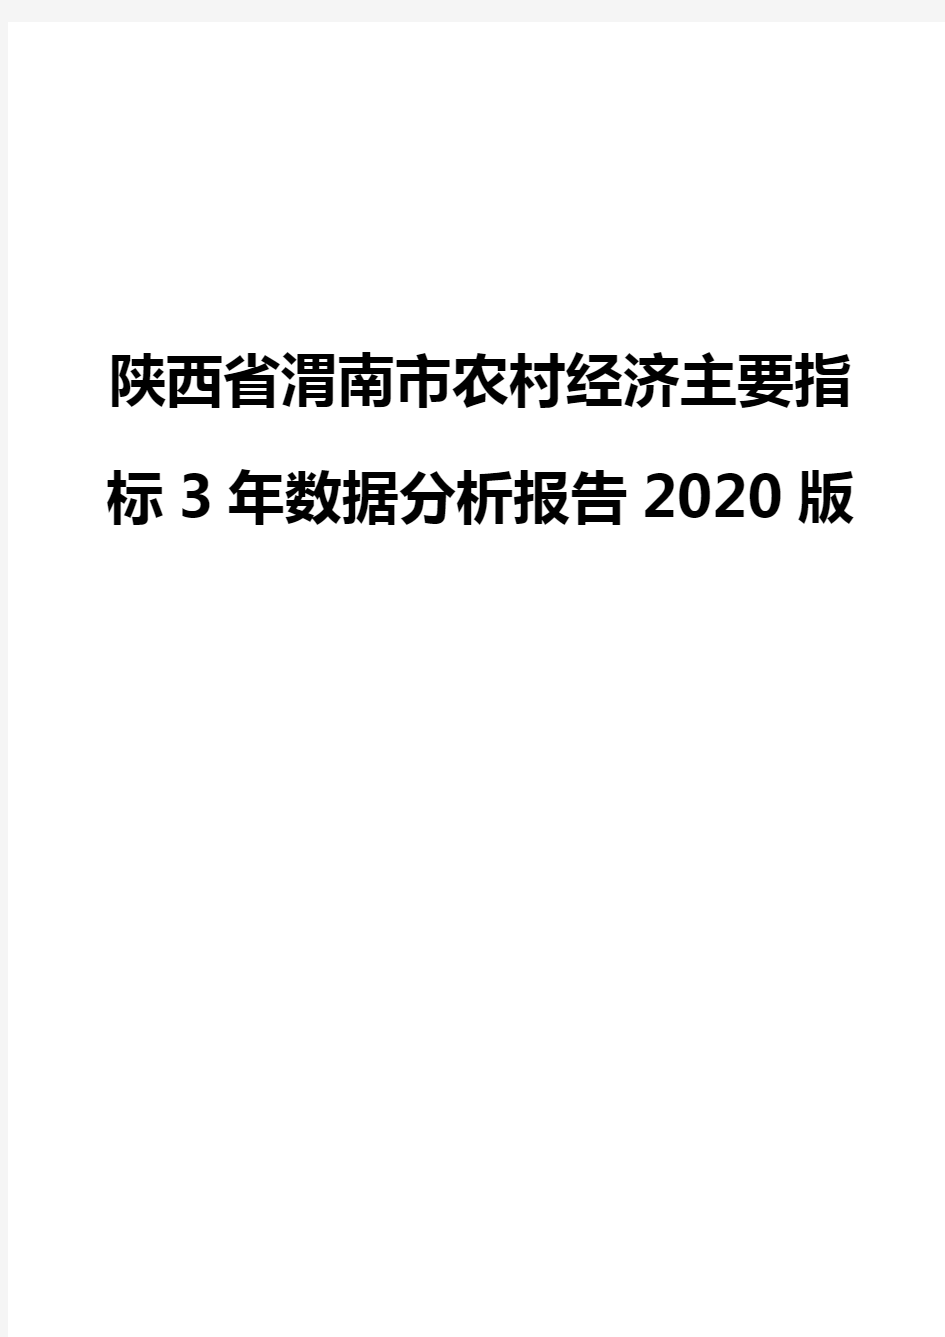 陕西省渭南市农村经济主要指标3年数据分析报告2020版